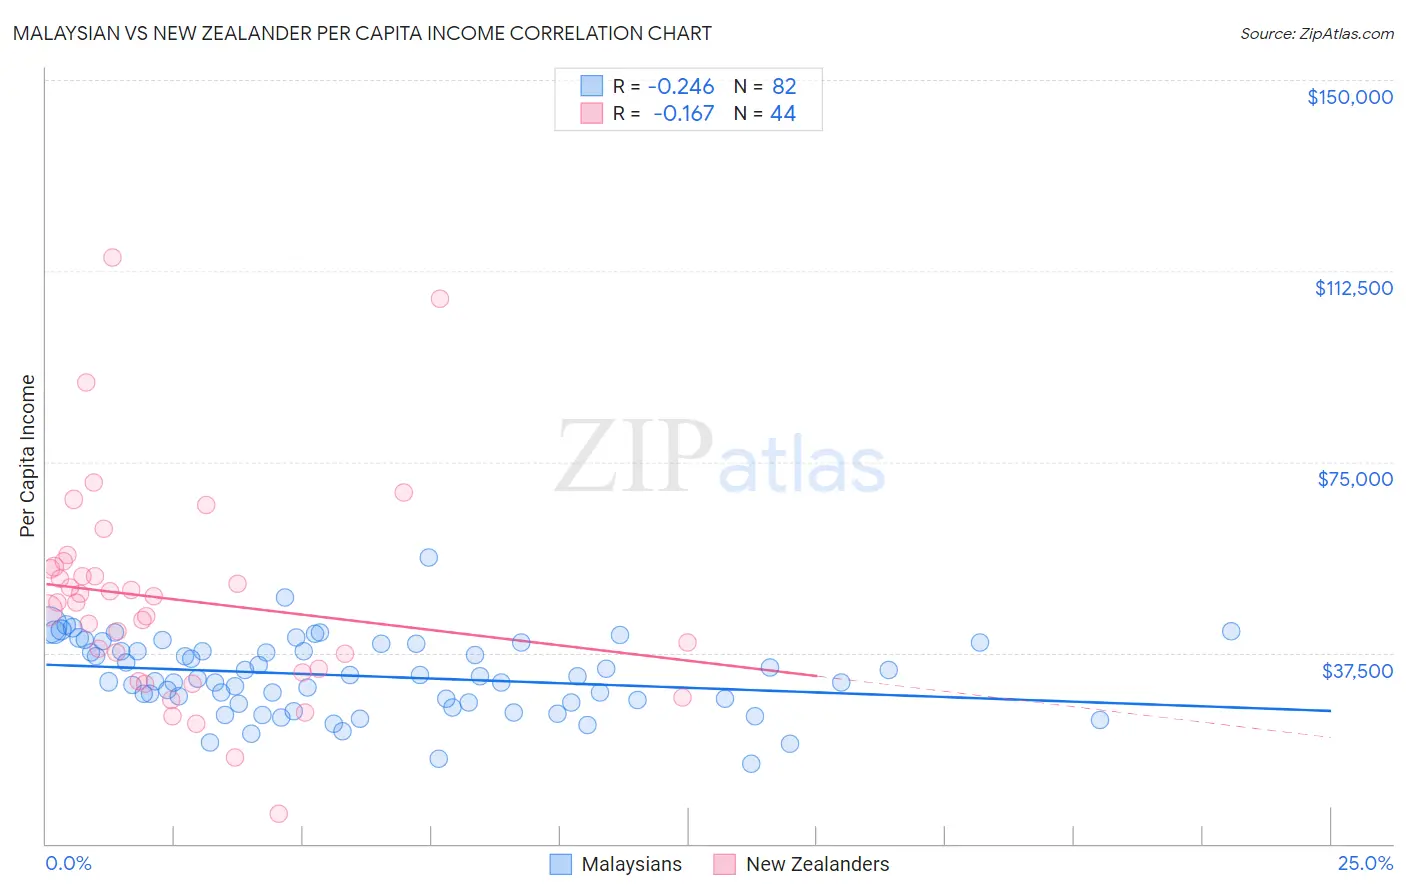 Malaysian vs New Zealander Per Capita Income